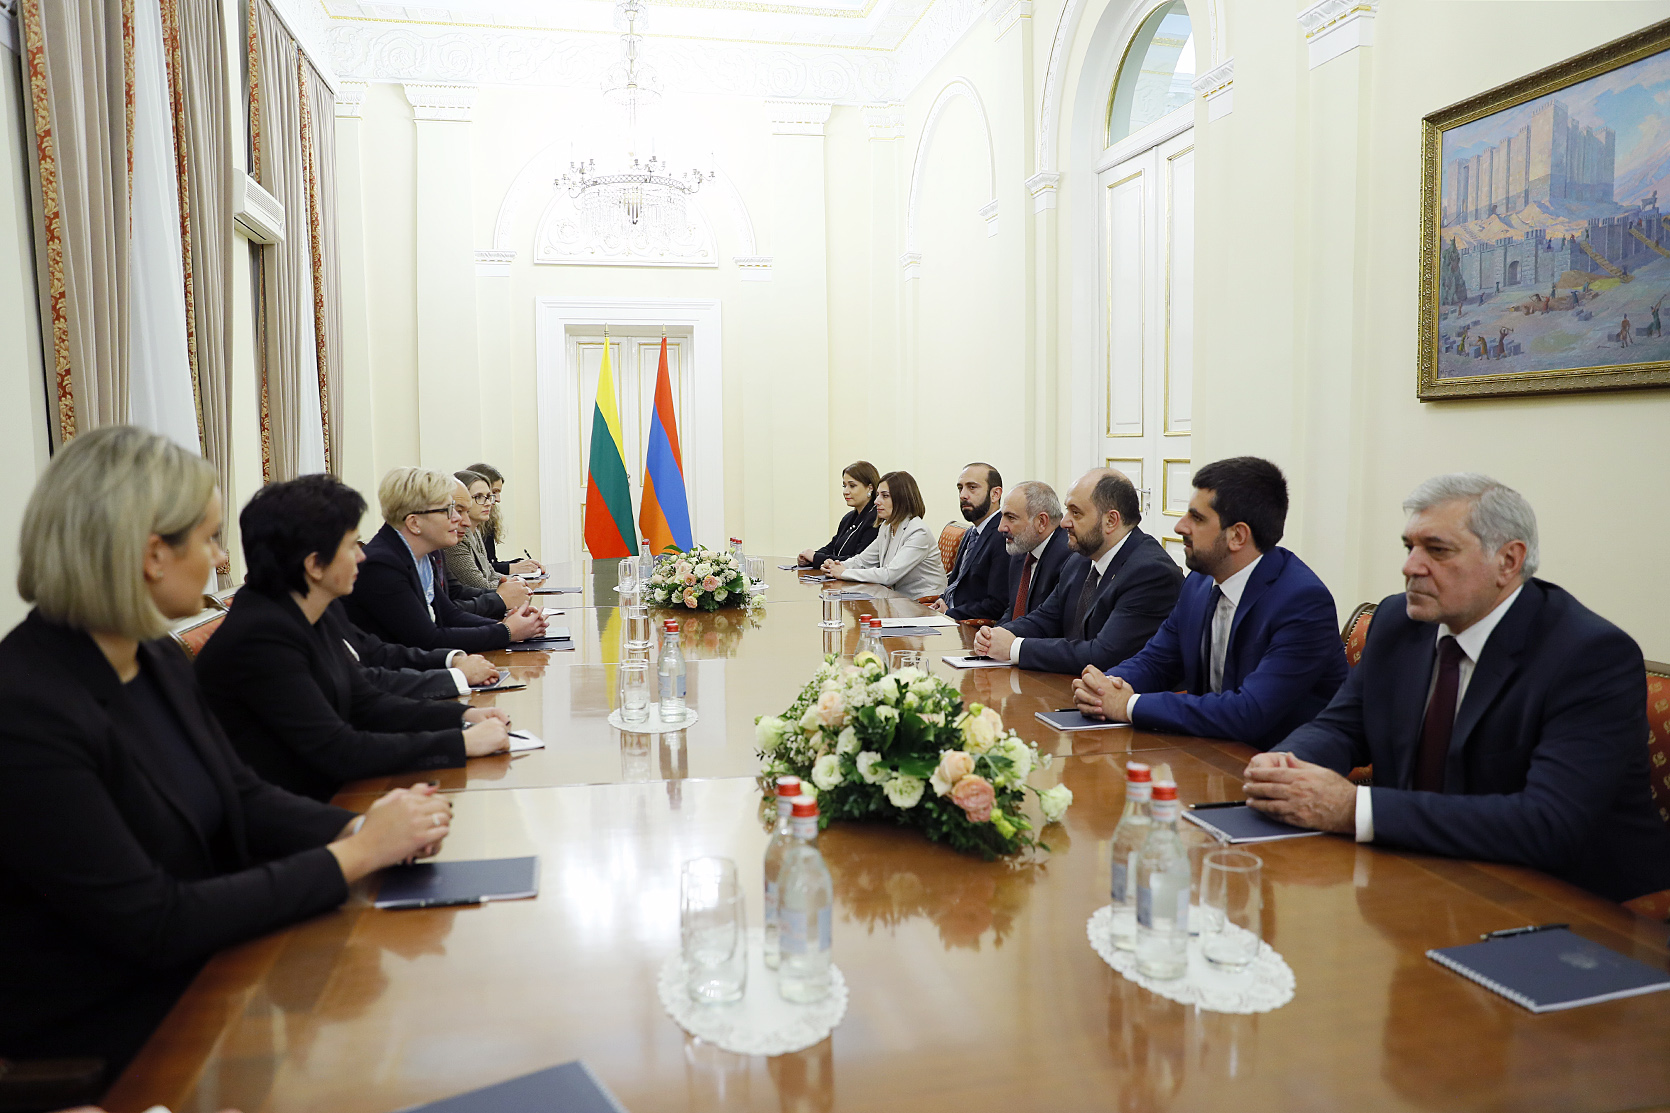 Հպարտ եմ, որ Լիտվան առաջին պետությունն է, որ Հայաստանի անկախությունը ճանաչեց 1991-ին. Լիտվայի վարչապետը՝ Փաշինյանին